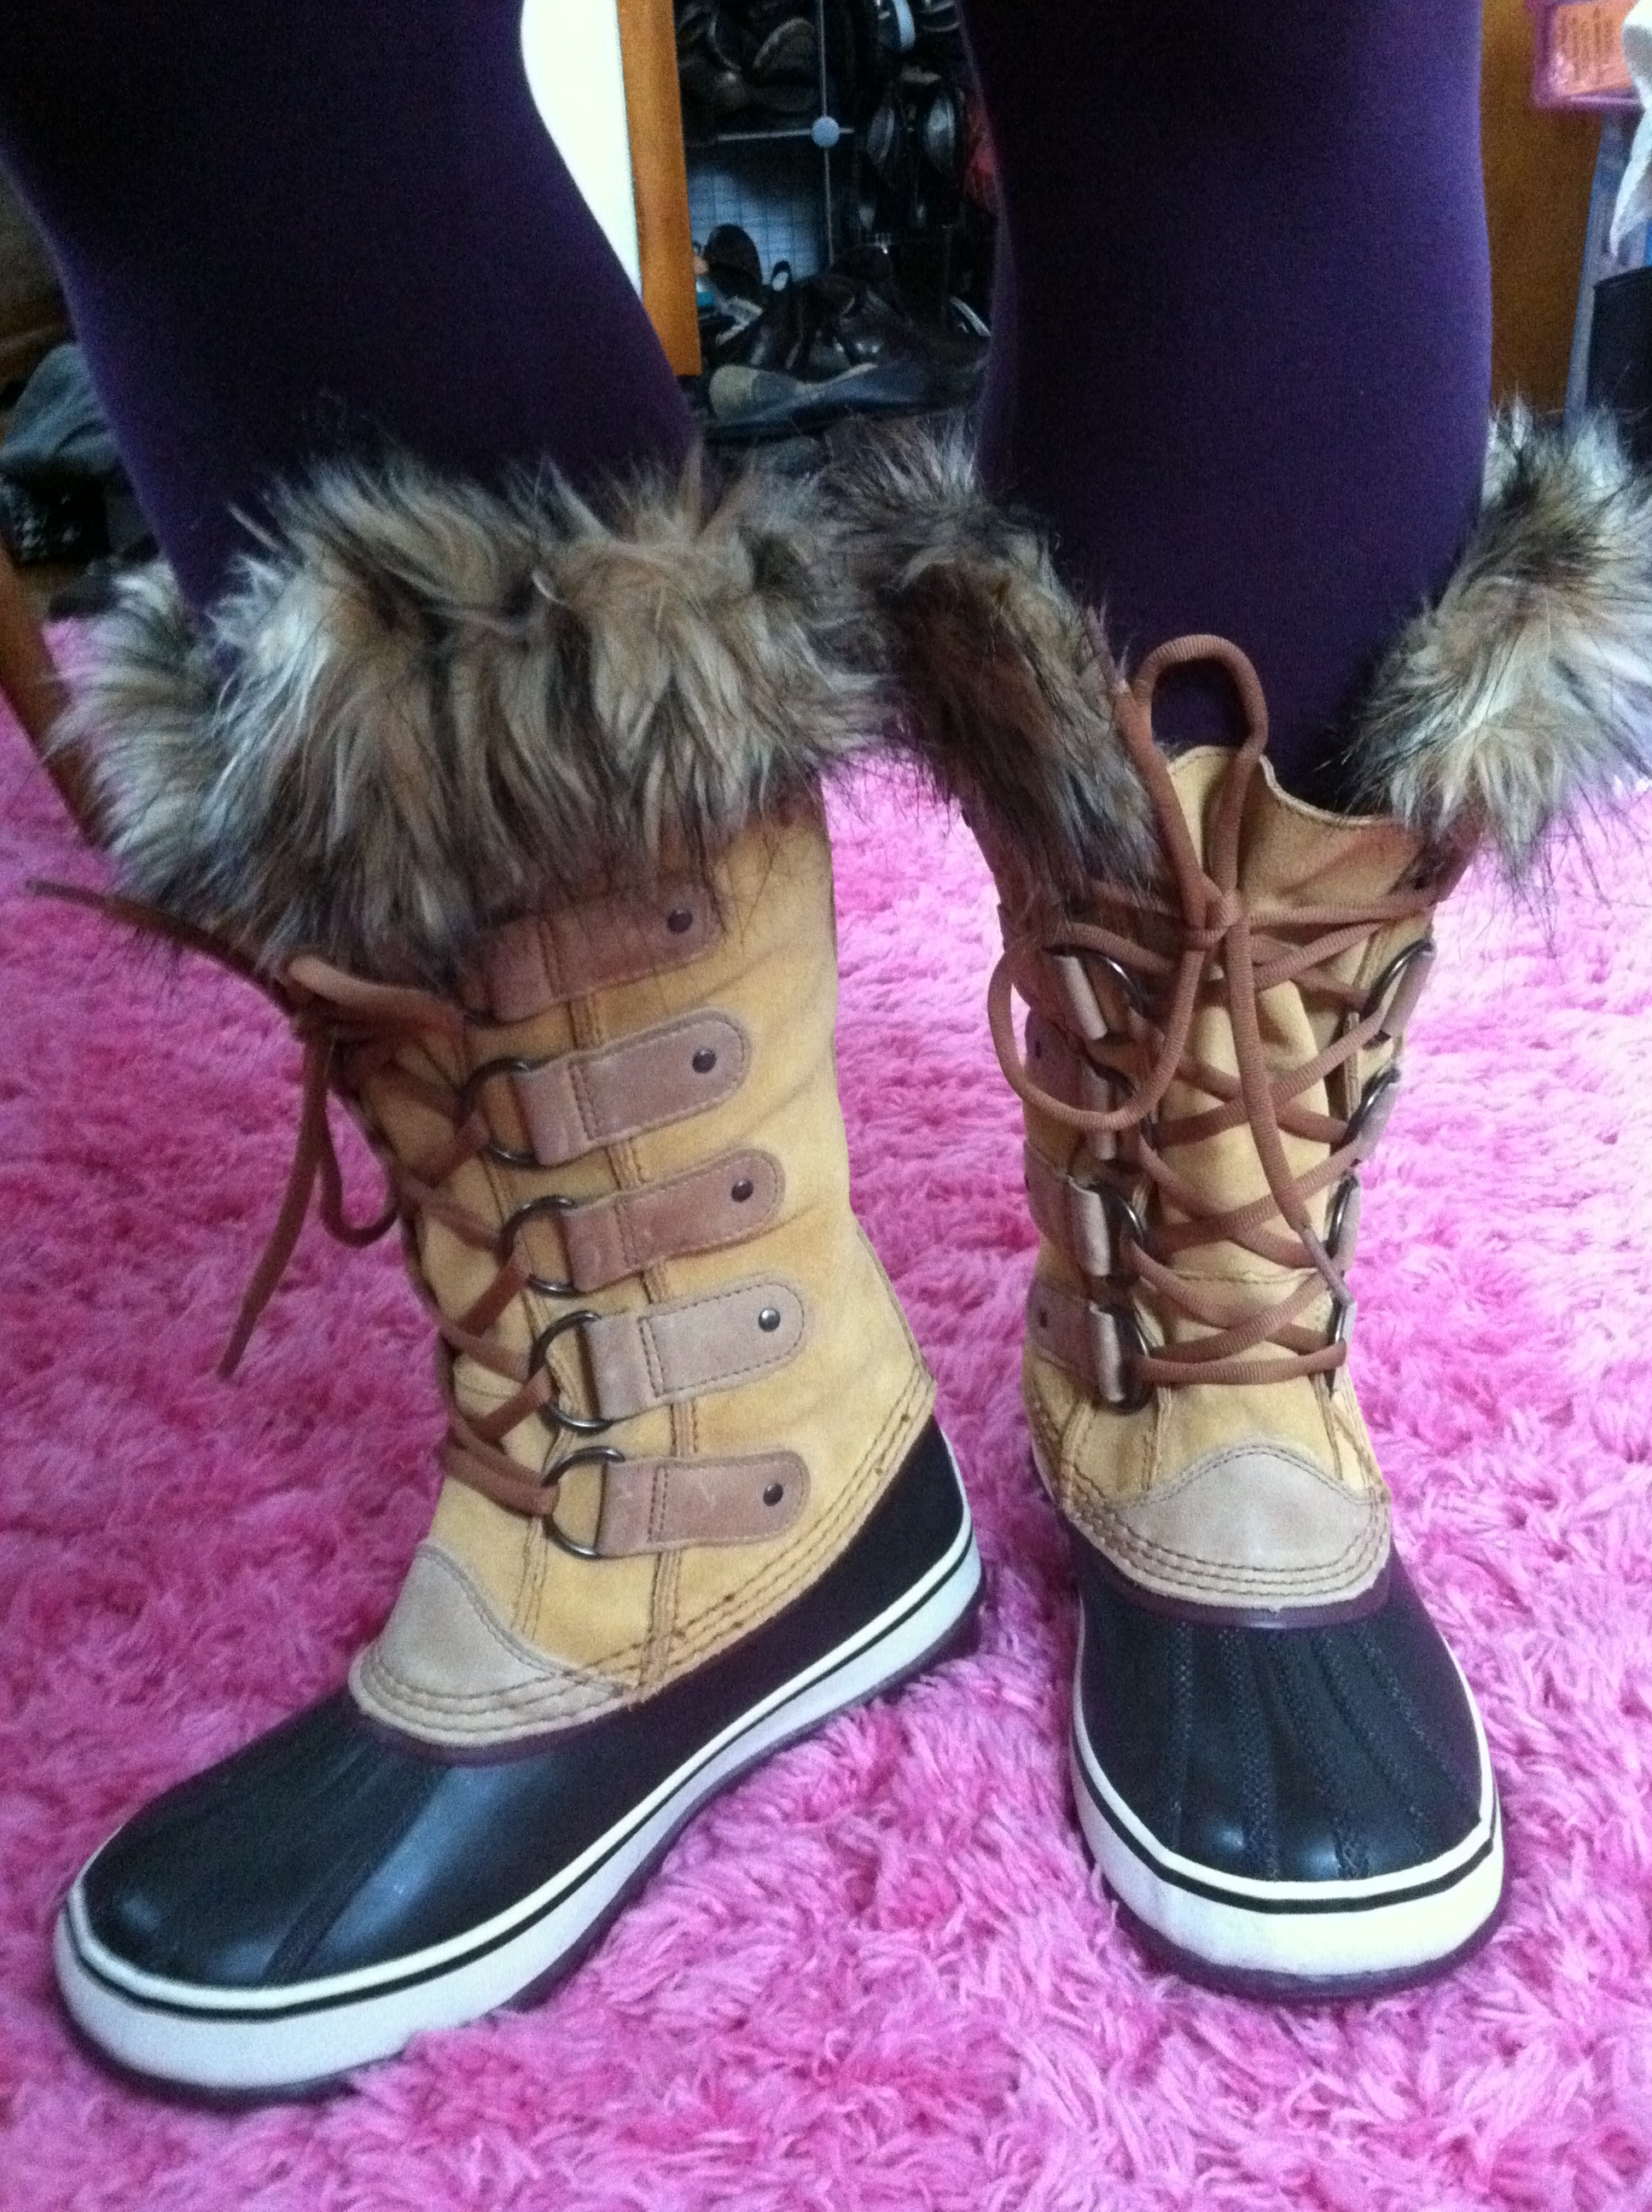 sorel joan of arctic boots review